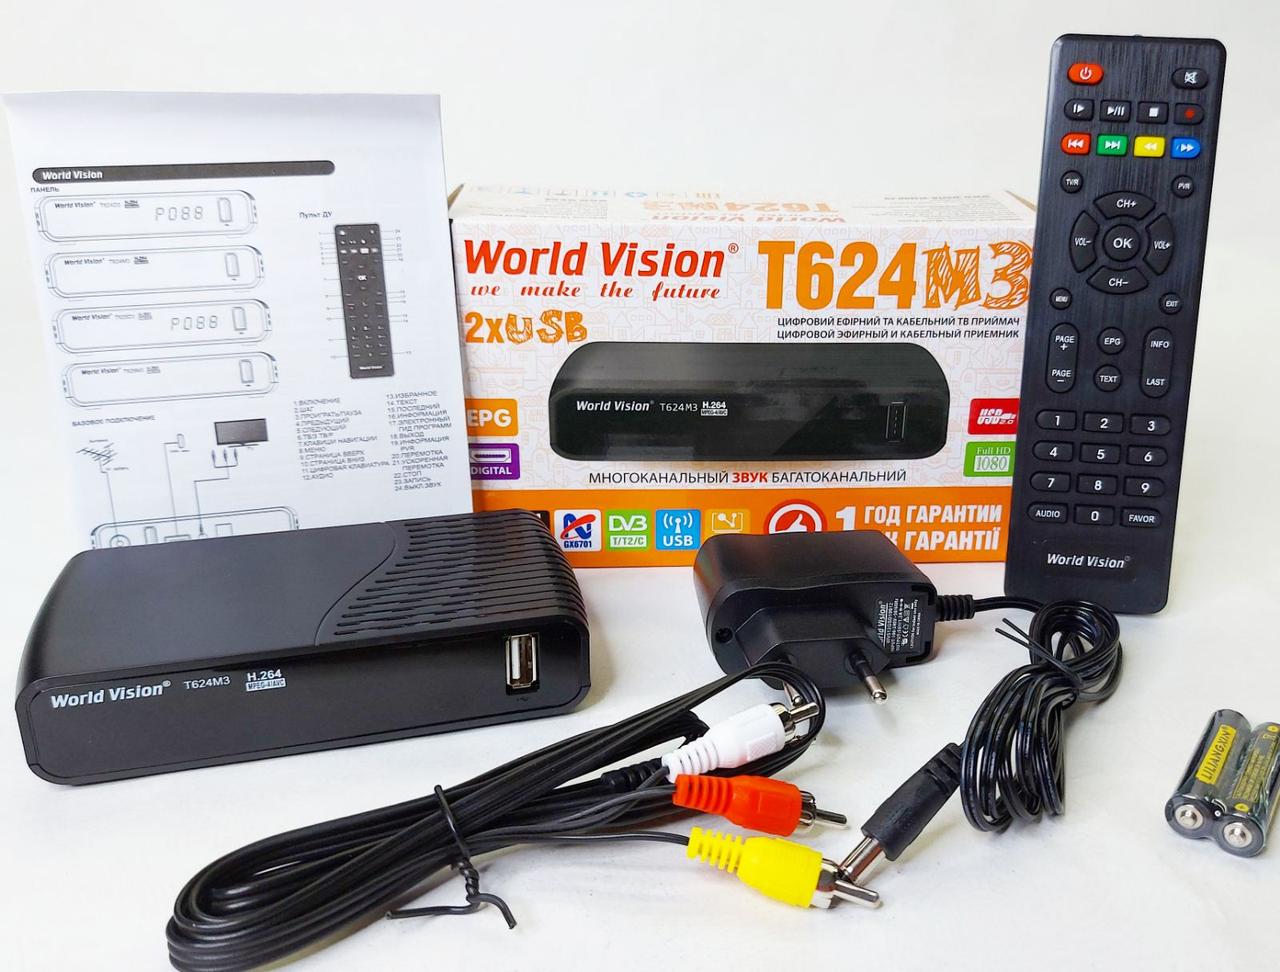 World Vision T624 M3 цифровий ефірний DVB-T2 тюнер